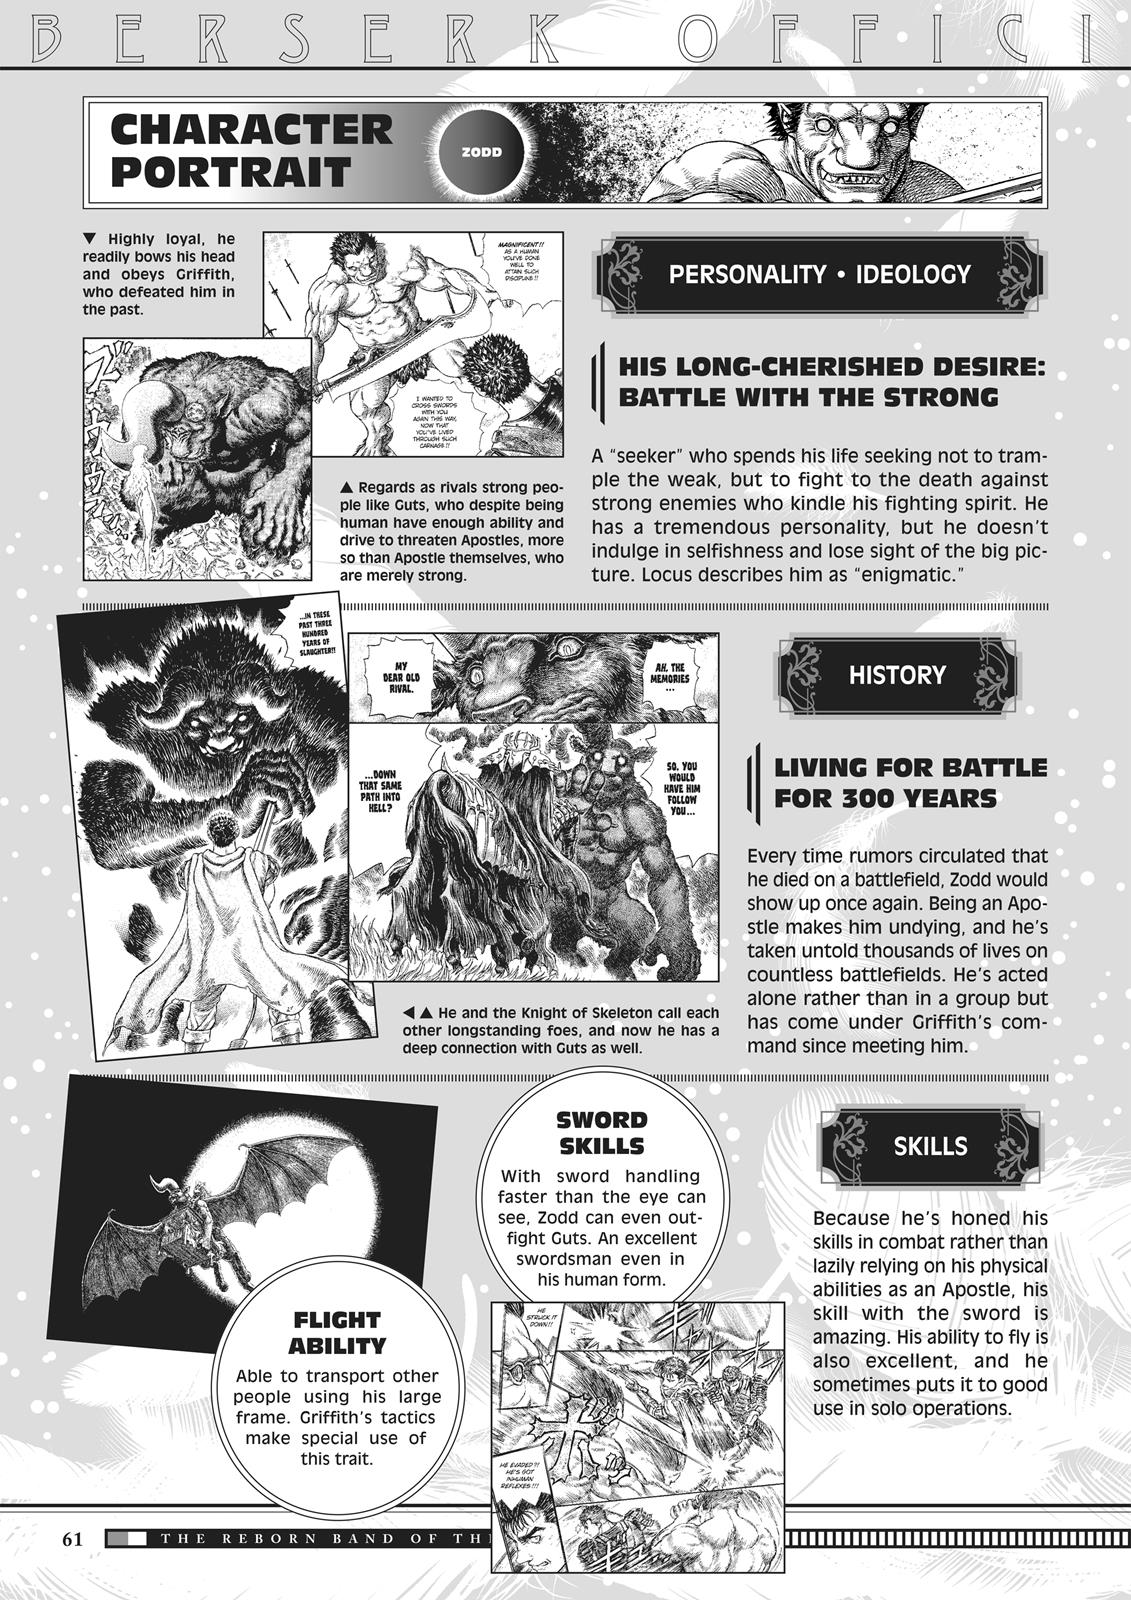 Berserk Manga Chapter 350.5 image 060